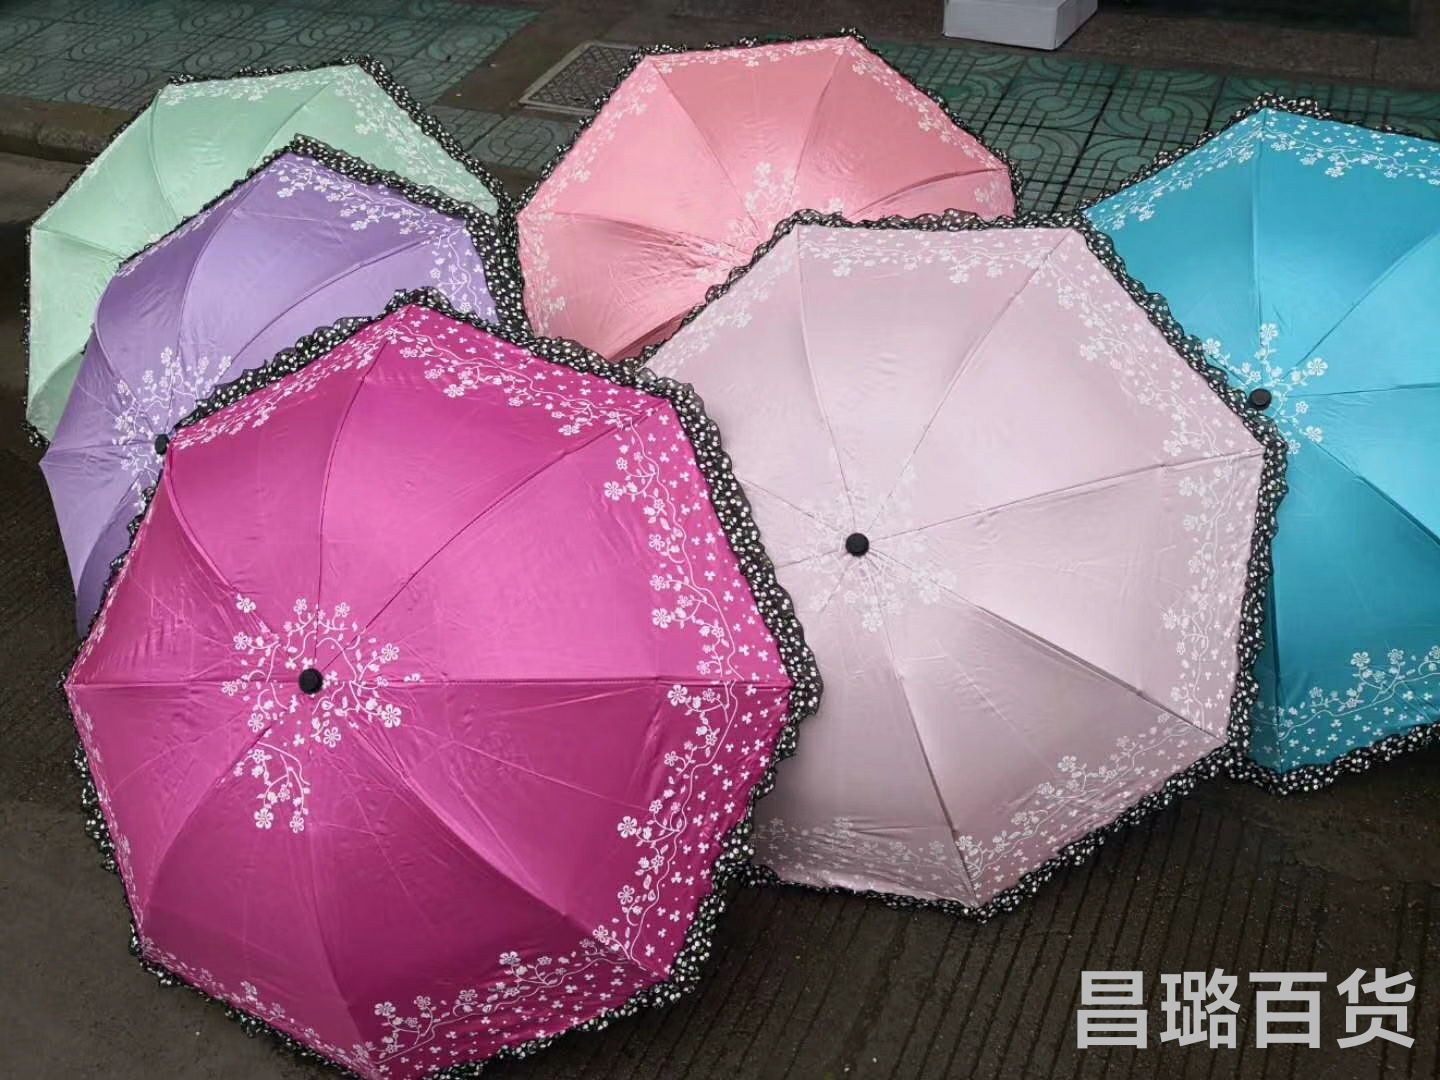 全自动折叠雨伞男女学生晴雨两用水果小清新太阳伞防紫外线遮阳伞图